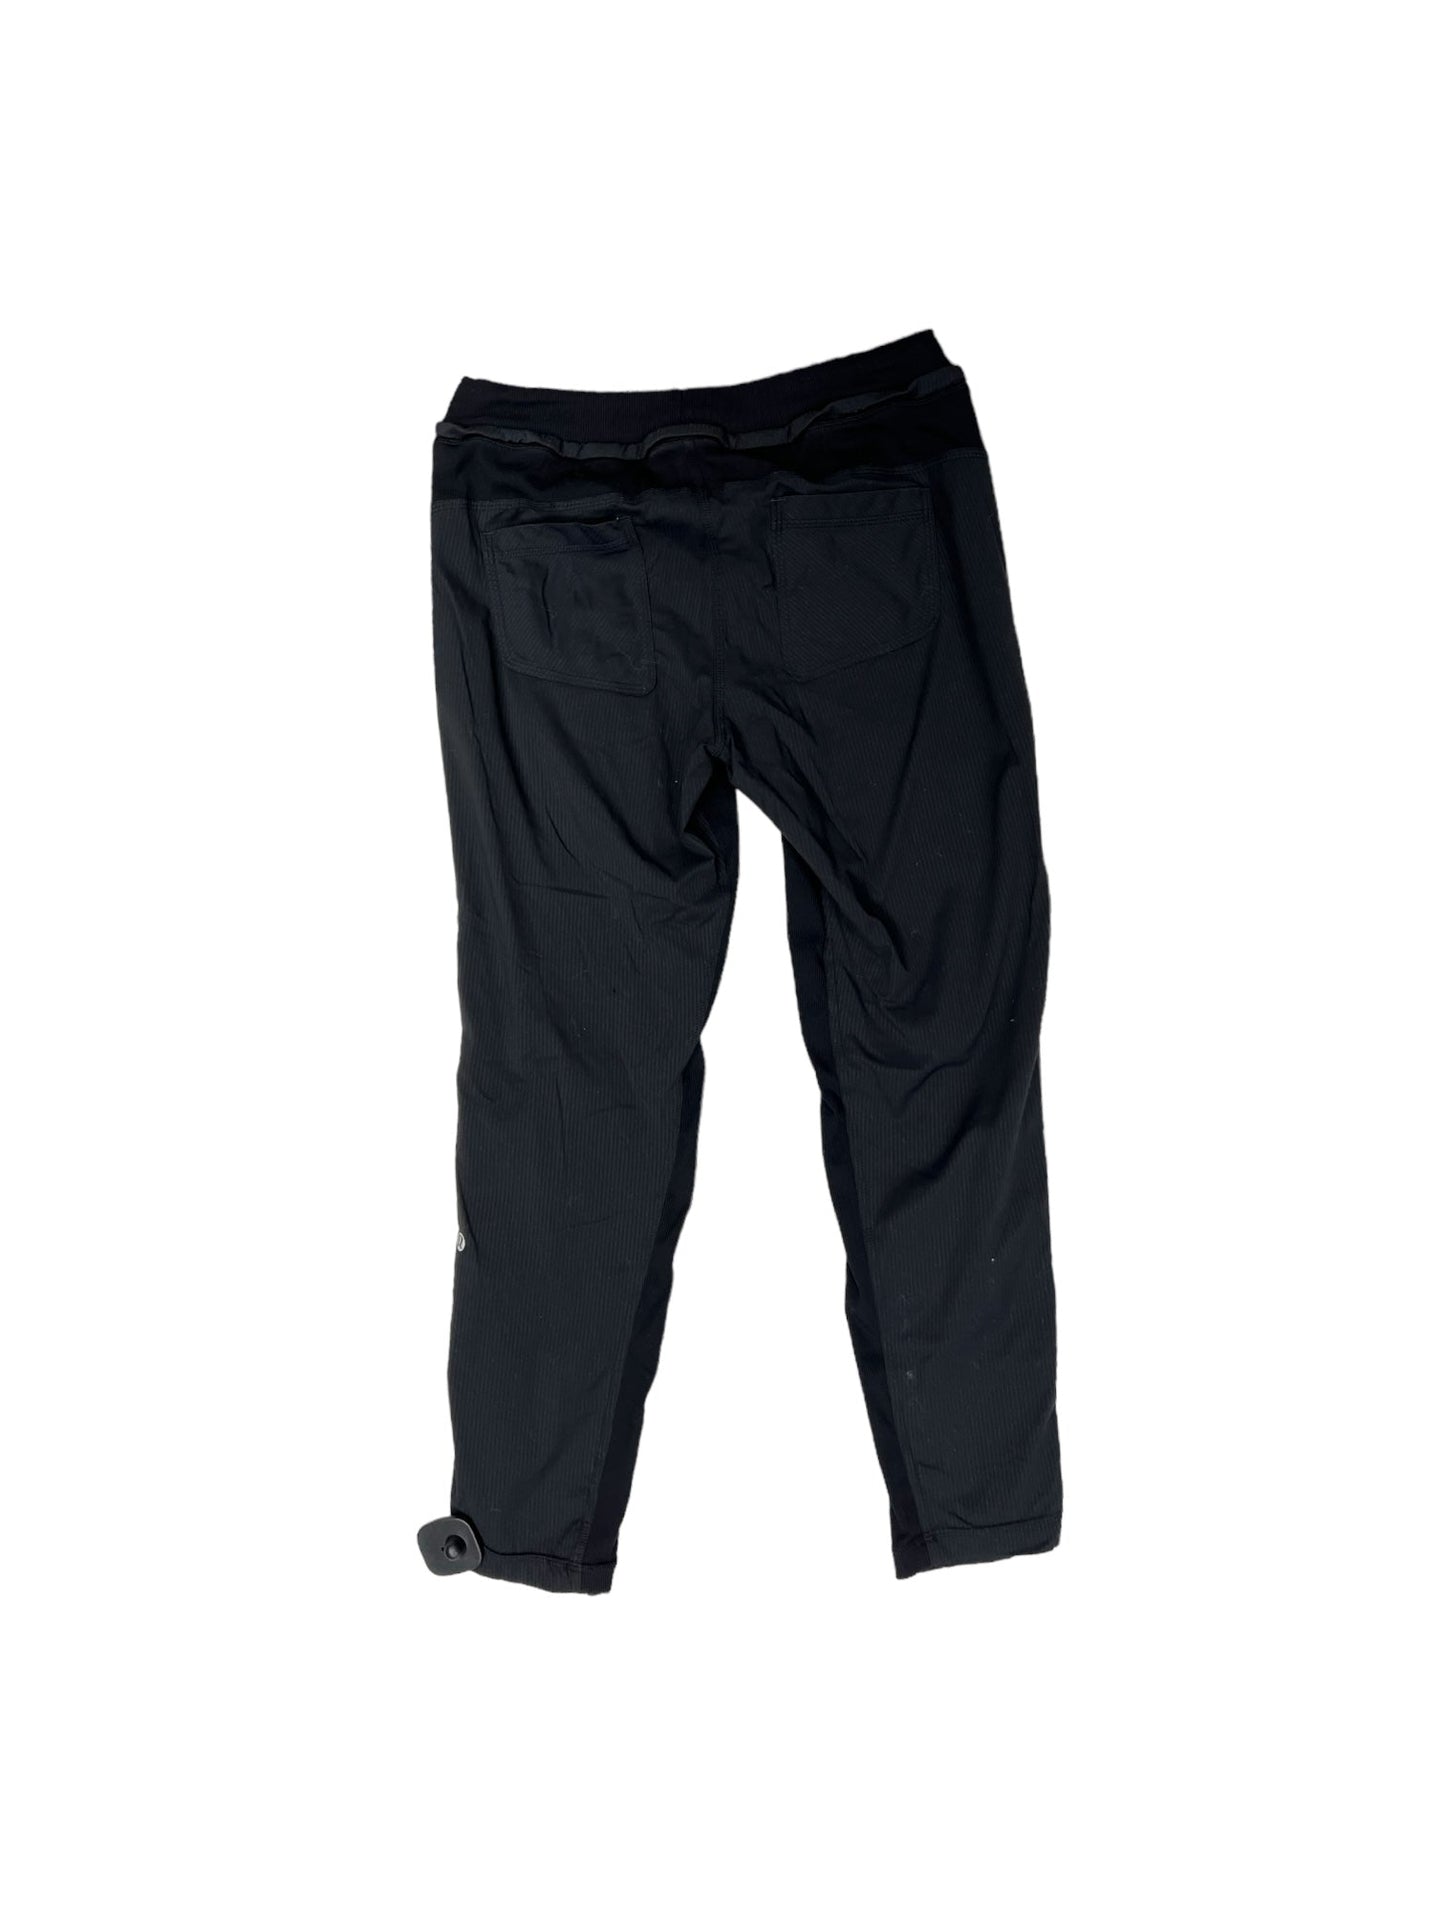 Black Athletic Pants Lululemon, Size 6